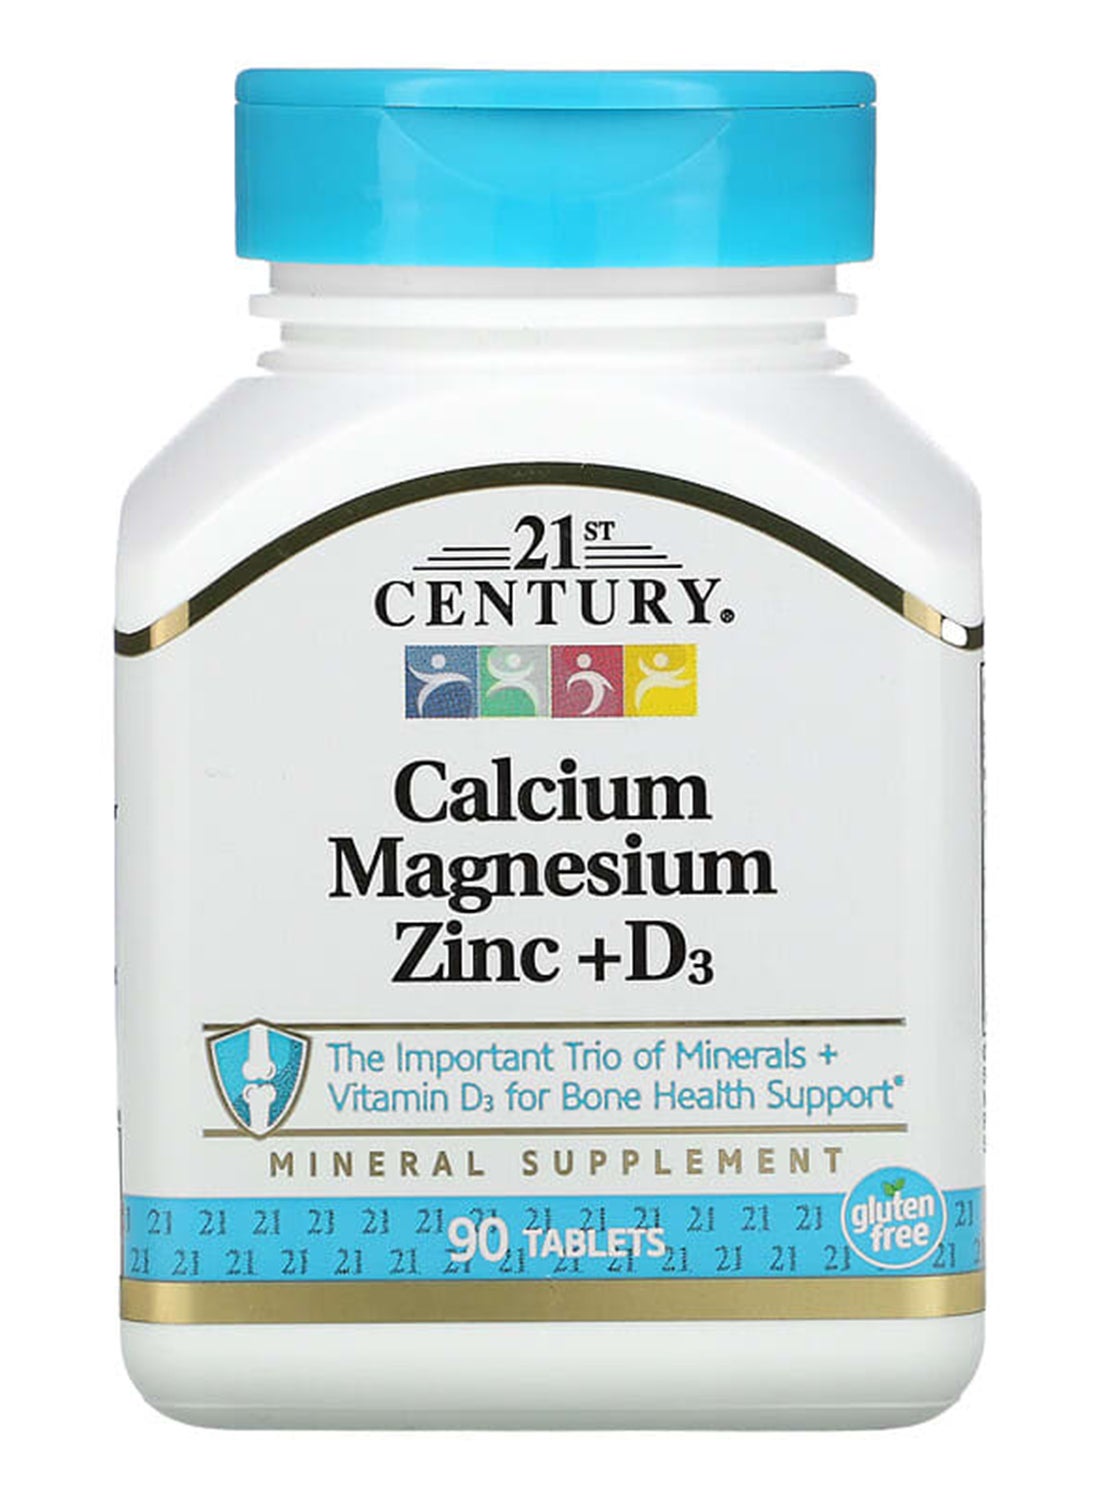 Calcium Magnesium Zinc + D3 Mineral Supplement - 90 Tablets 